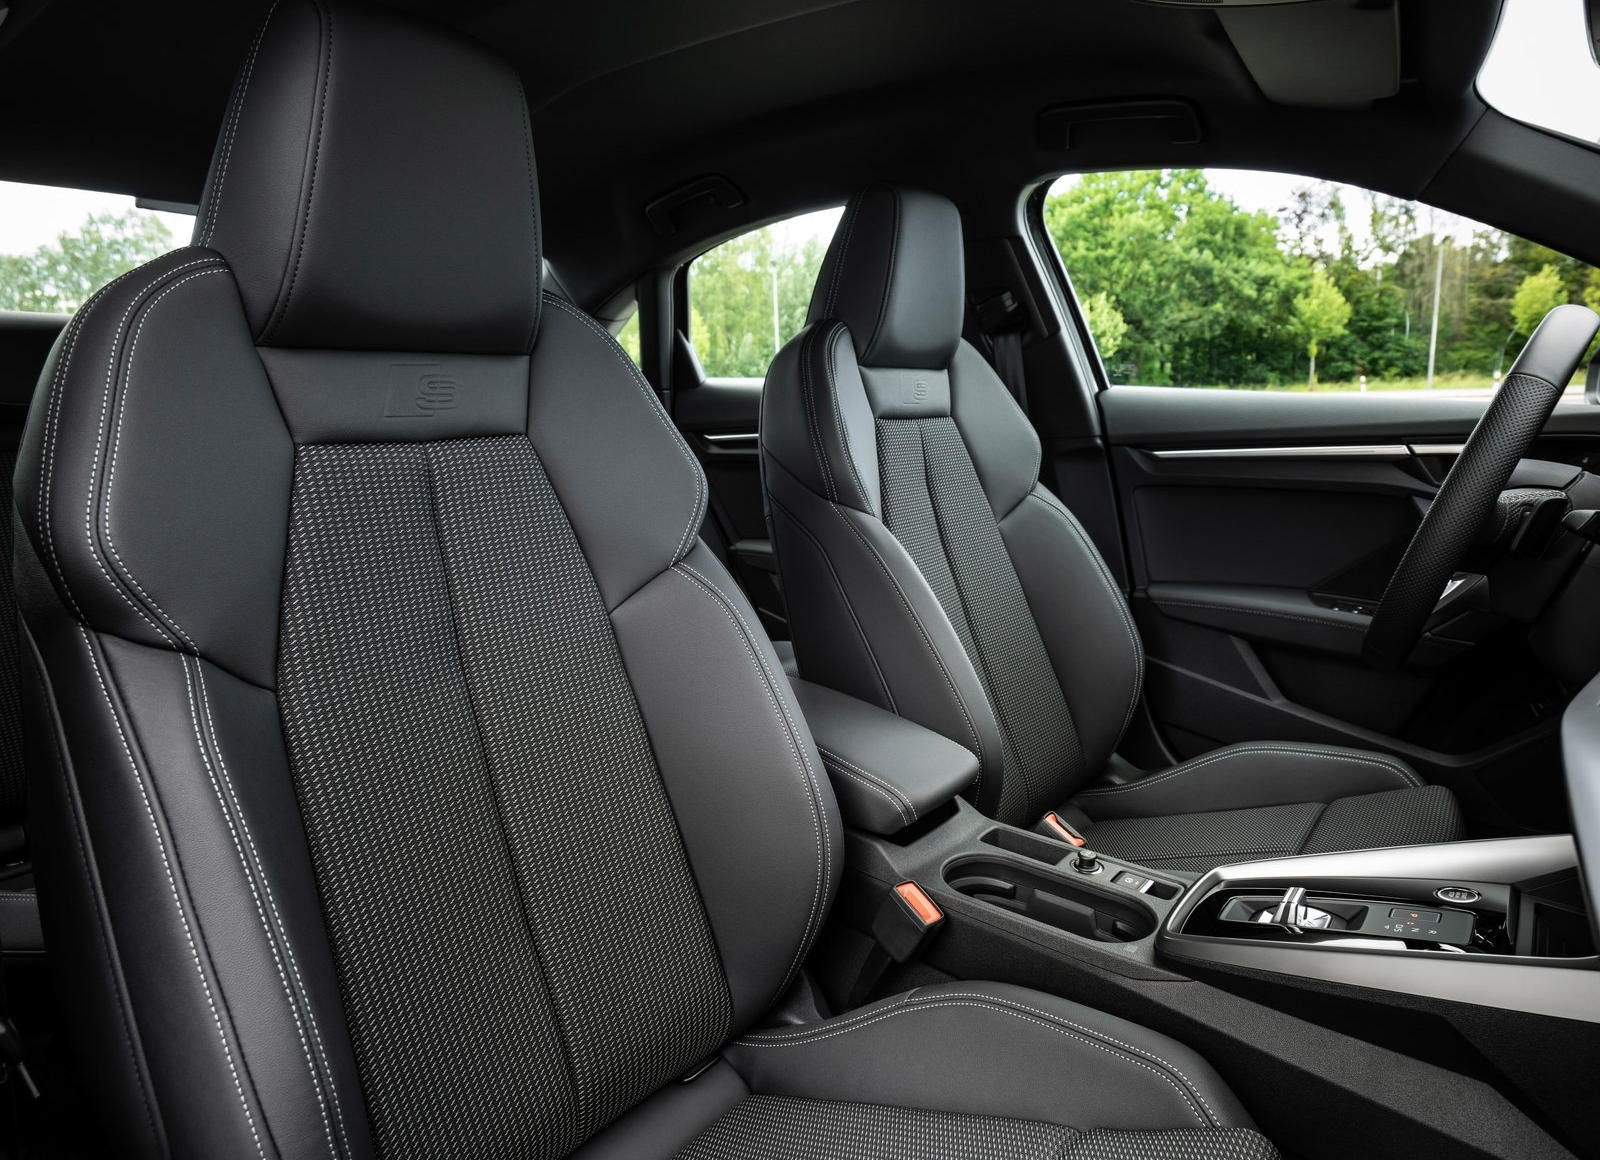 Audi A3 interior - Seats